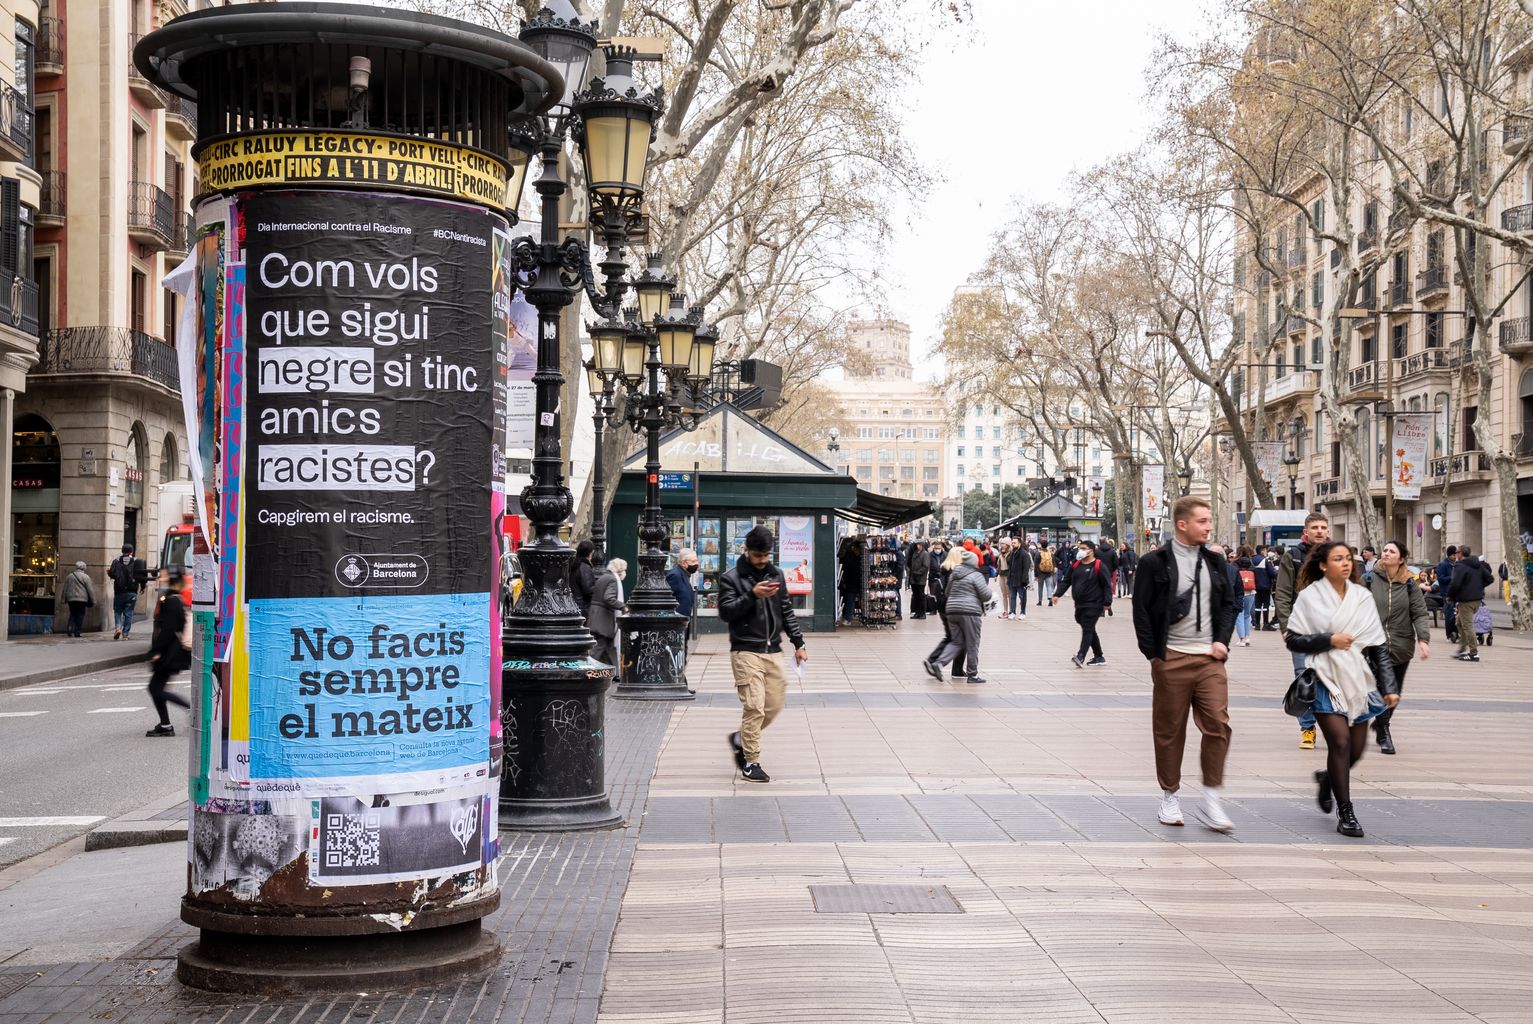 Tótem en las Rambles con el cartel de la campaña Barcelona antirracista que lleva el lema "Com vols que sigui negre si tinc amics racistes?" y gente paseando por la calle